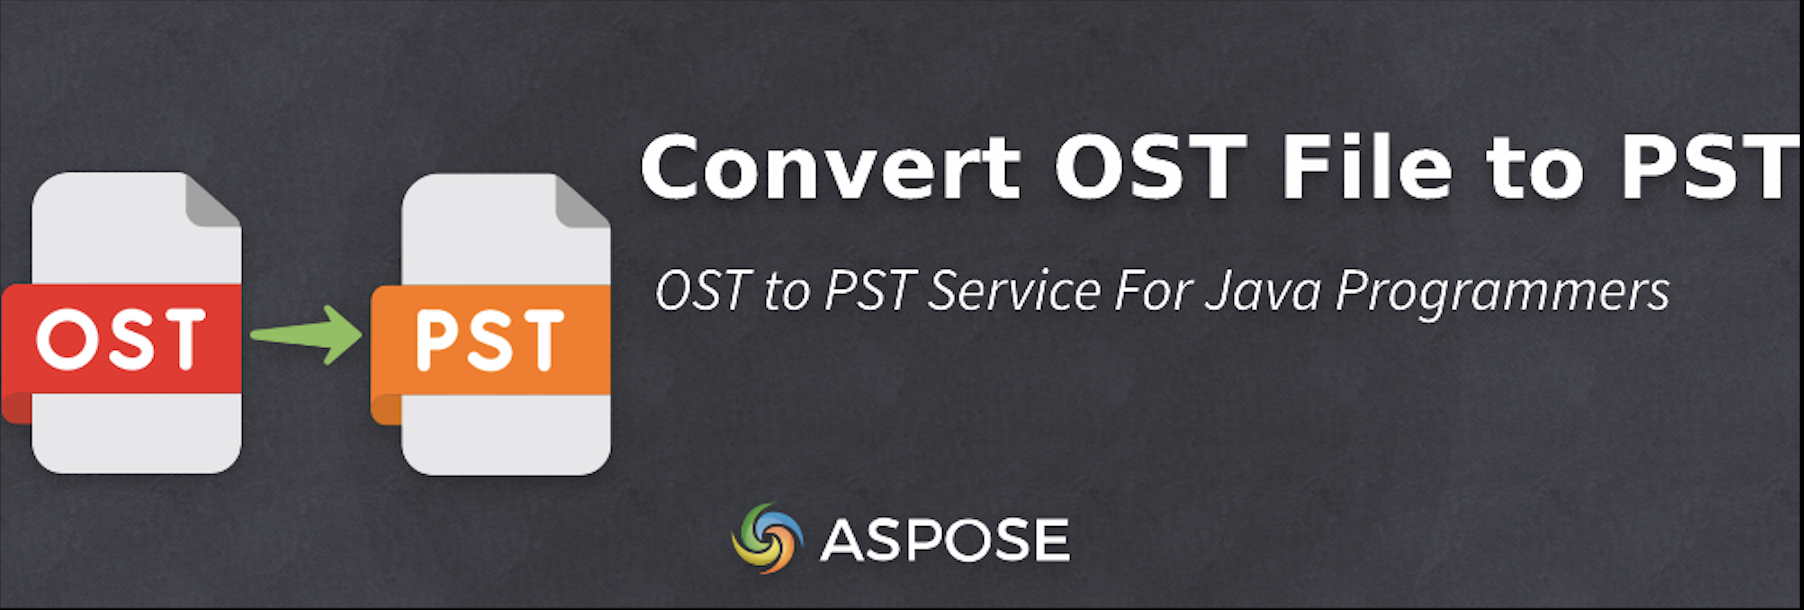 Konvertera OST-filer till PST i Java - Gratis OST till PST-konverterare